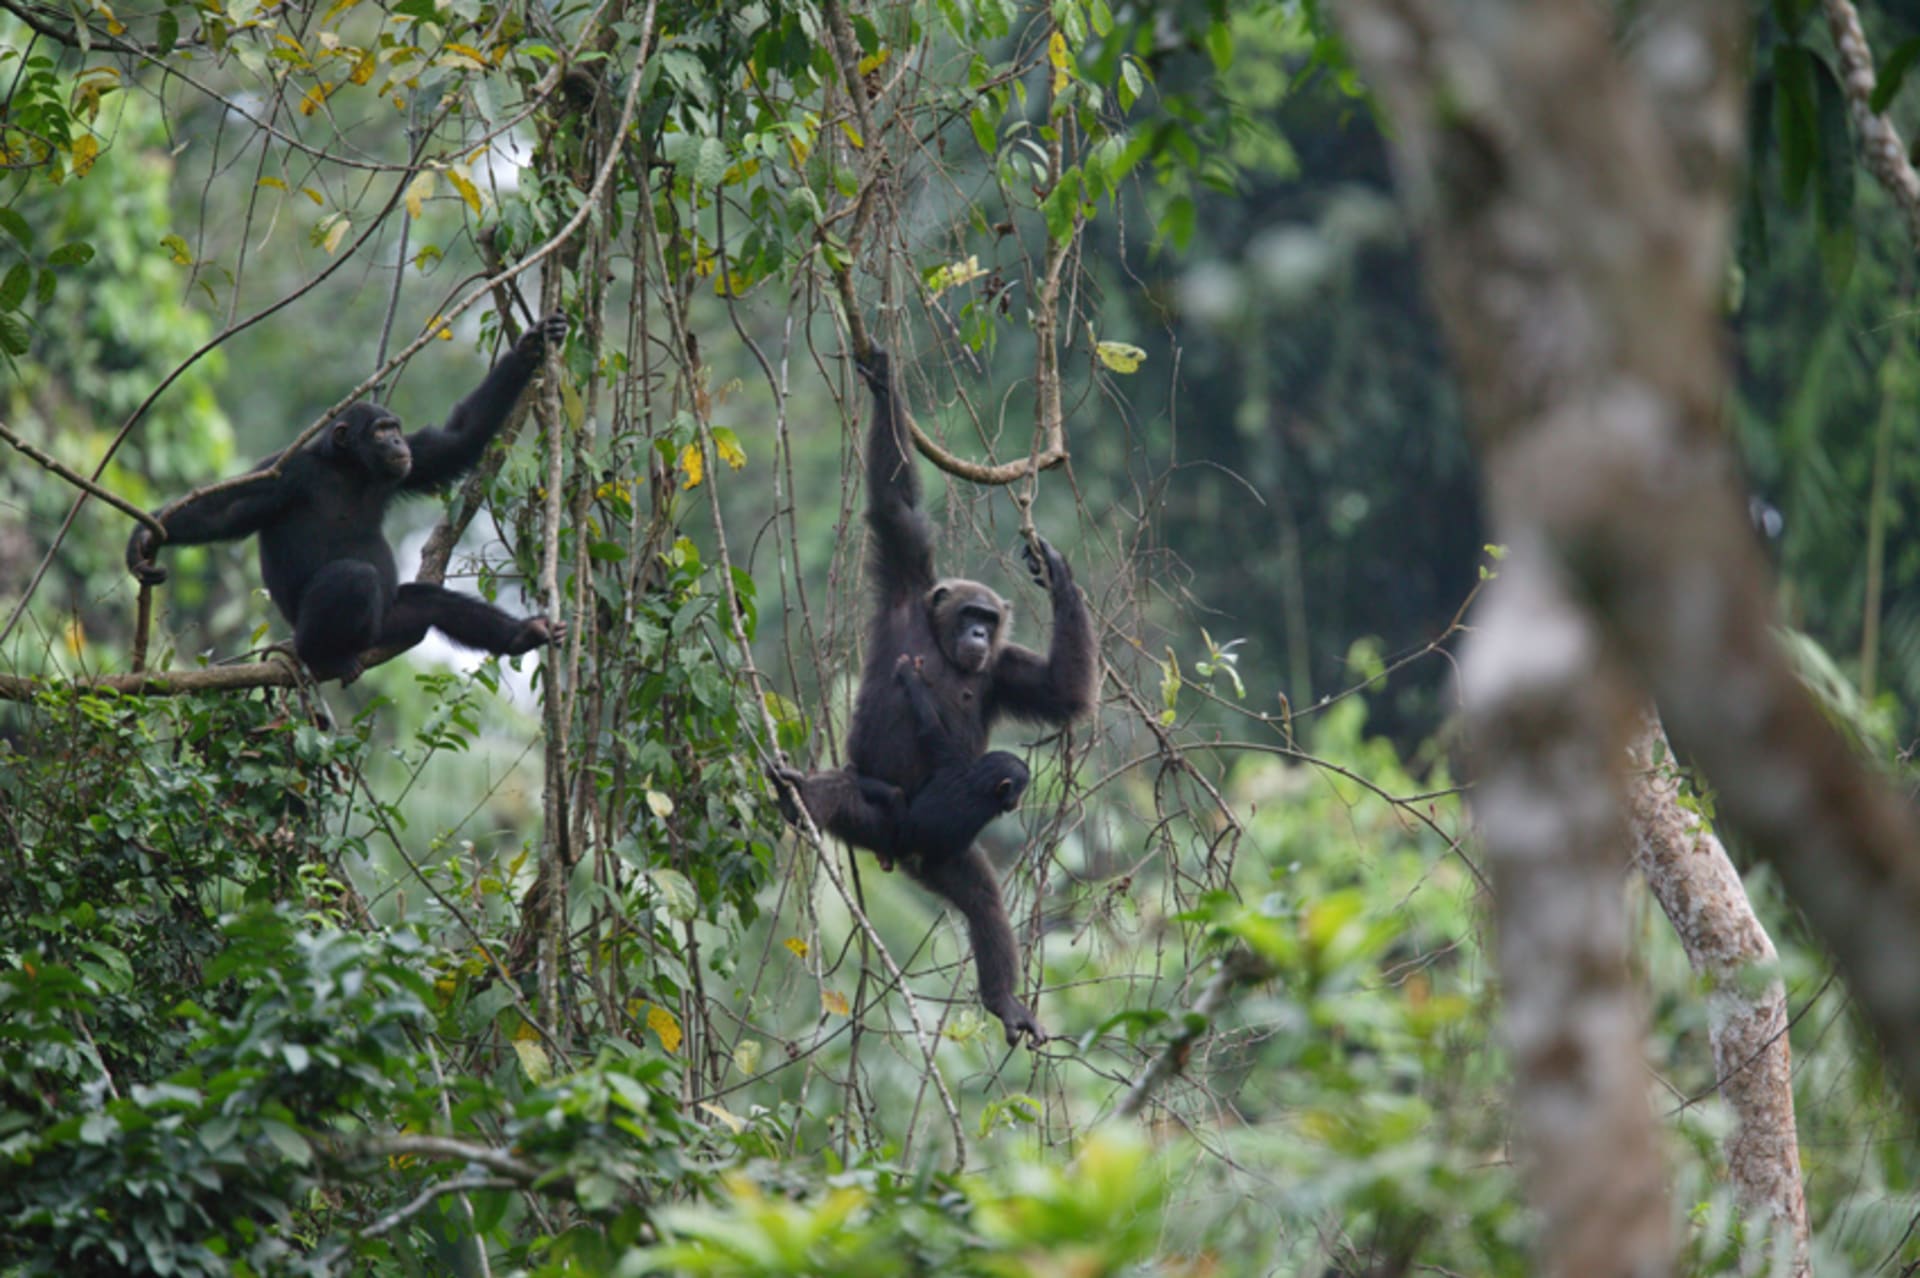 Vzácné nedotčené pralesy v Kamerunu i jejich obyvatelé jsou v ohrožení. Zdroj: Greenpeace Africa